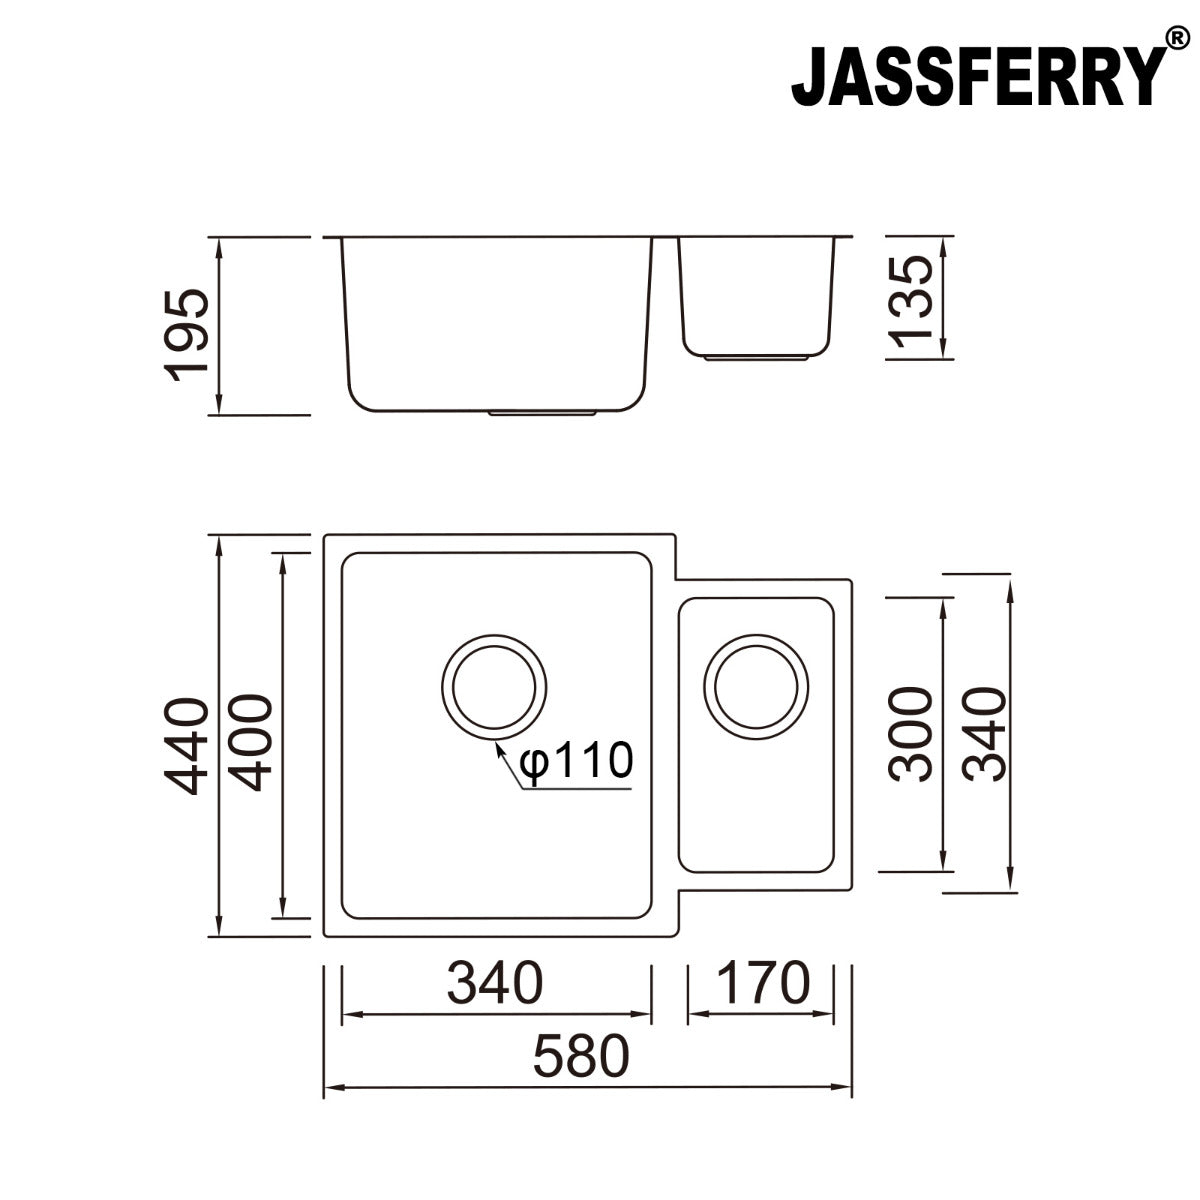 JassferryJASSFERRY Stainless Steel Kitchen Sink 1.5 Bowl Undermount Righthand Smaller Bowl 580 X 440 mmKitchen Sinks